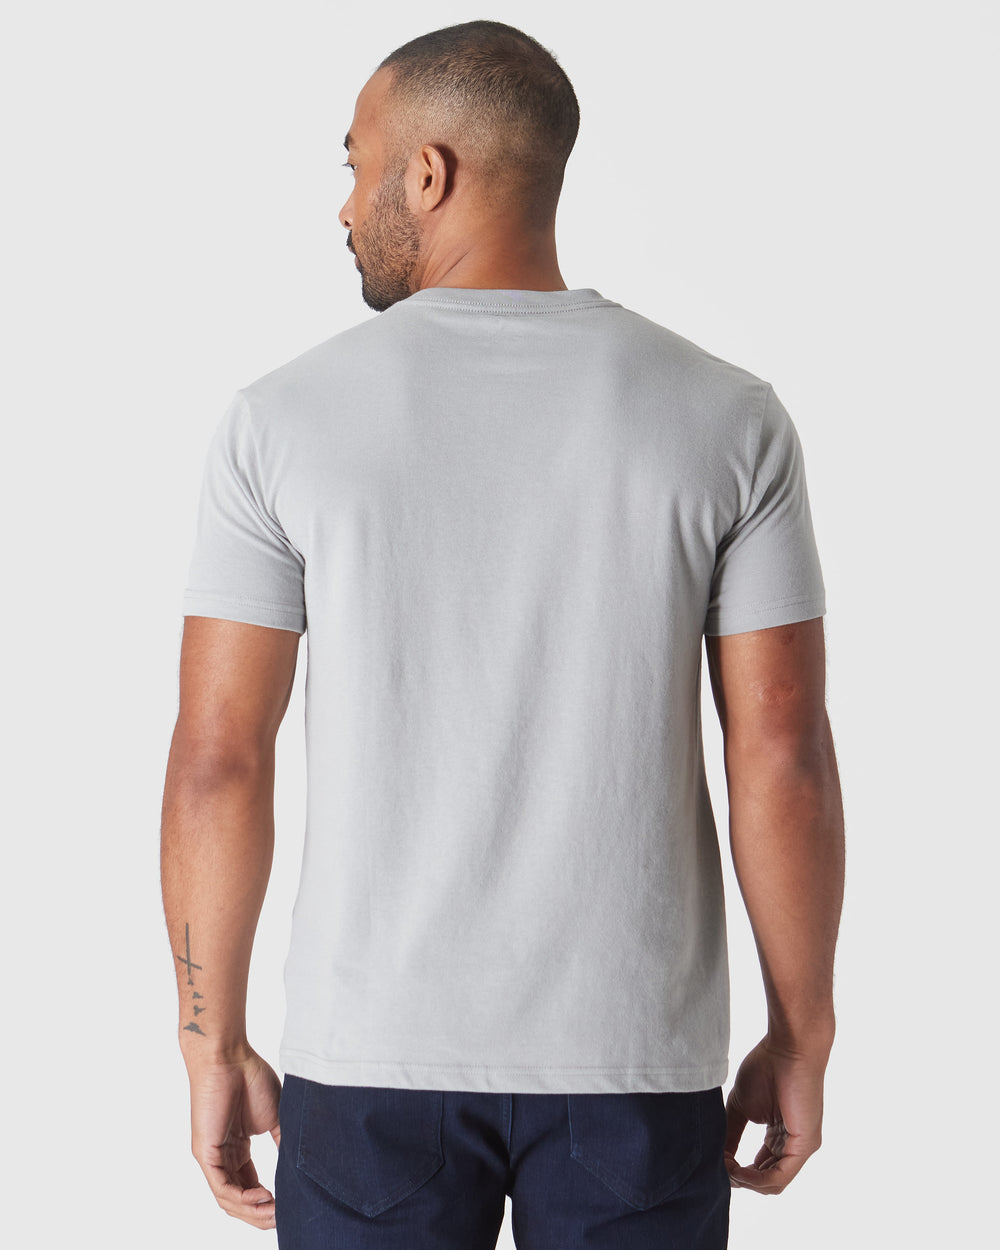 Steel Short Sleeve Vee Neck T-Shirt